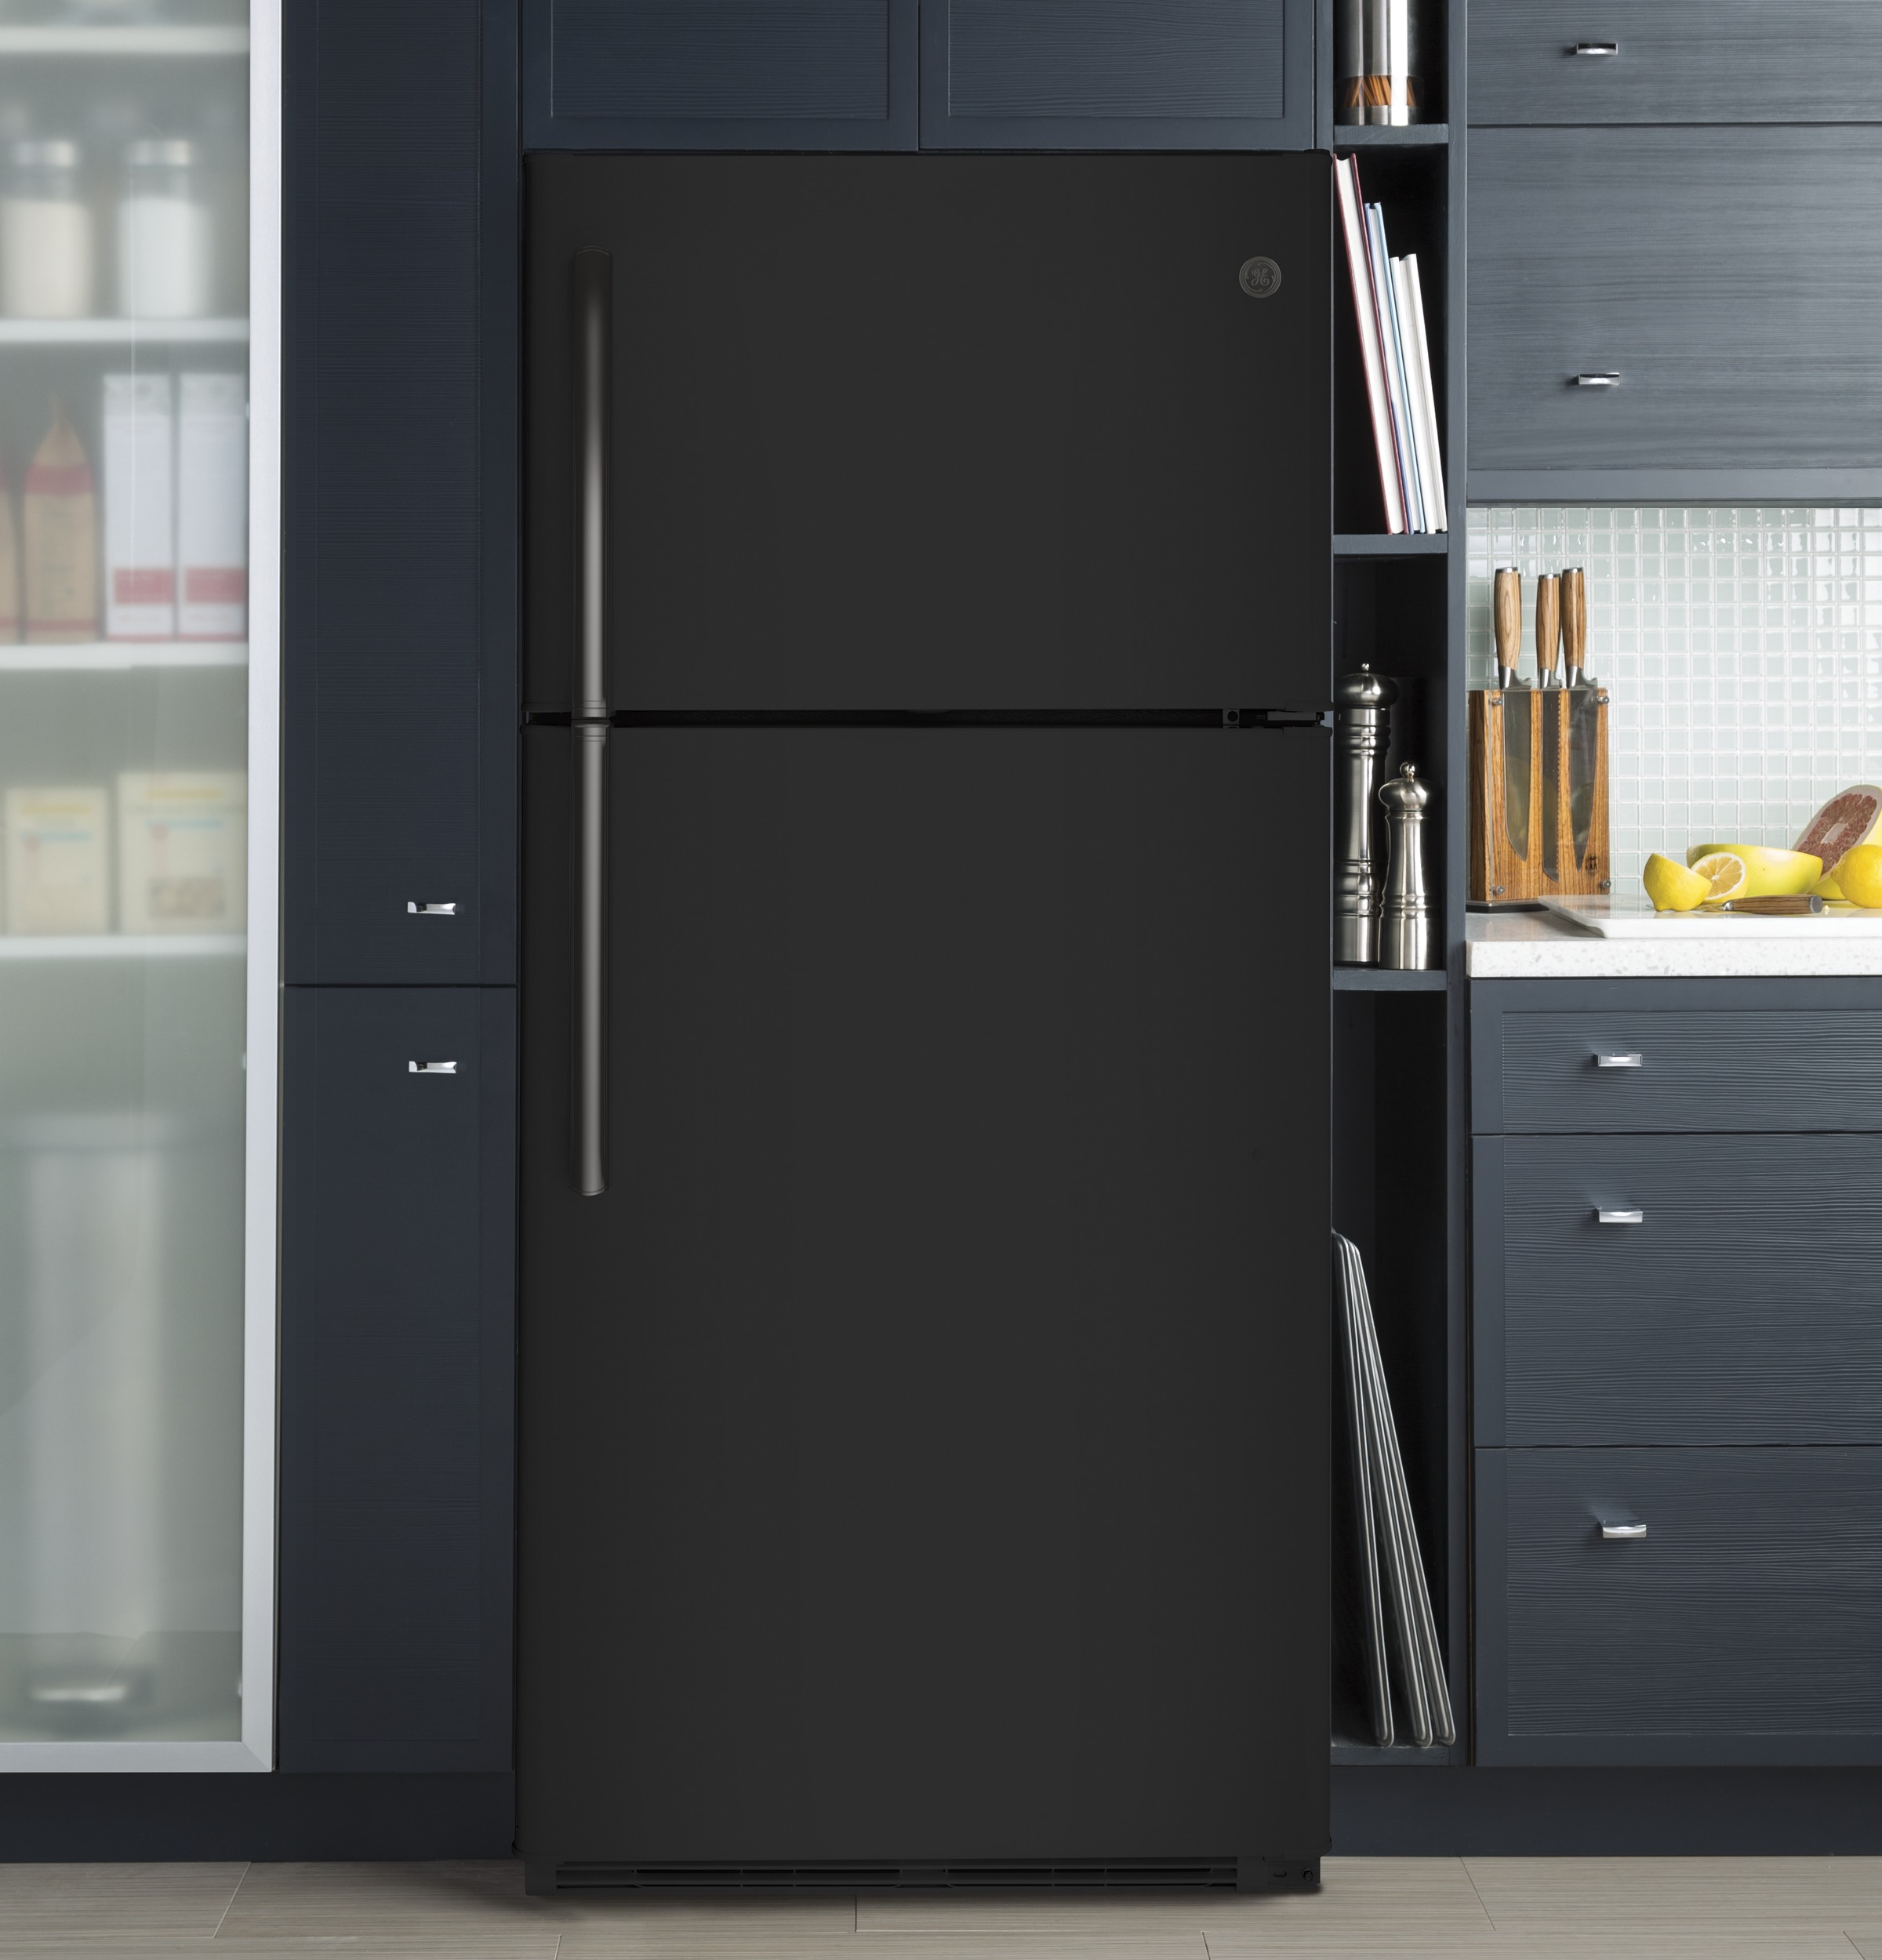 GE black top freezer refrigerator in kitchen